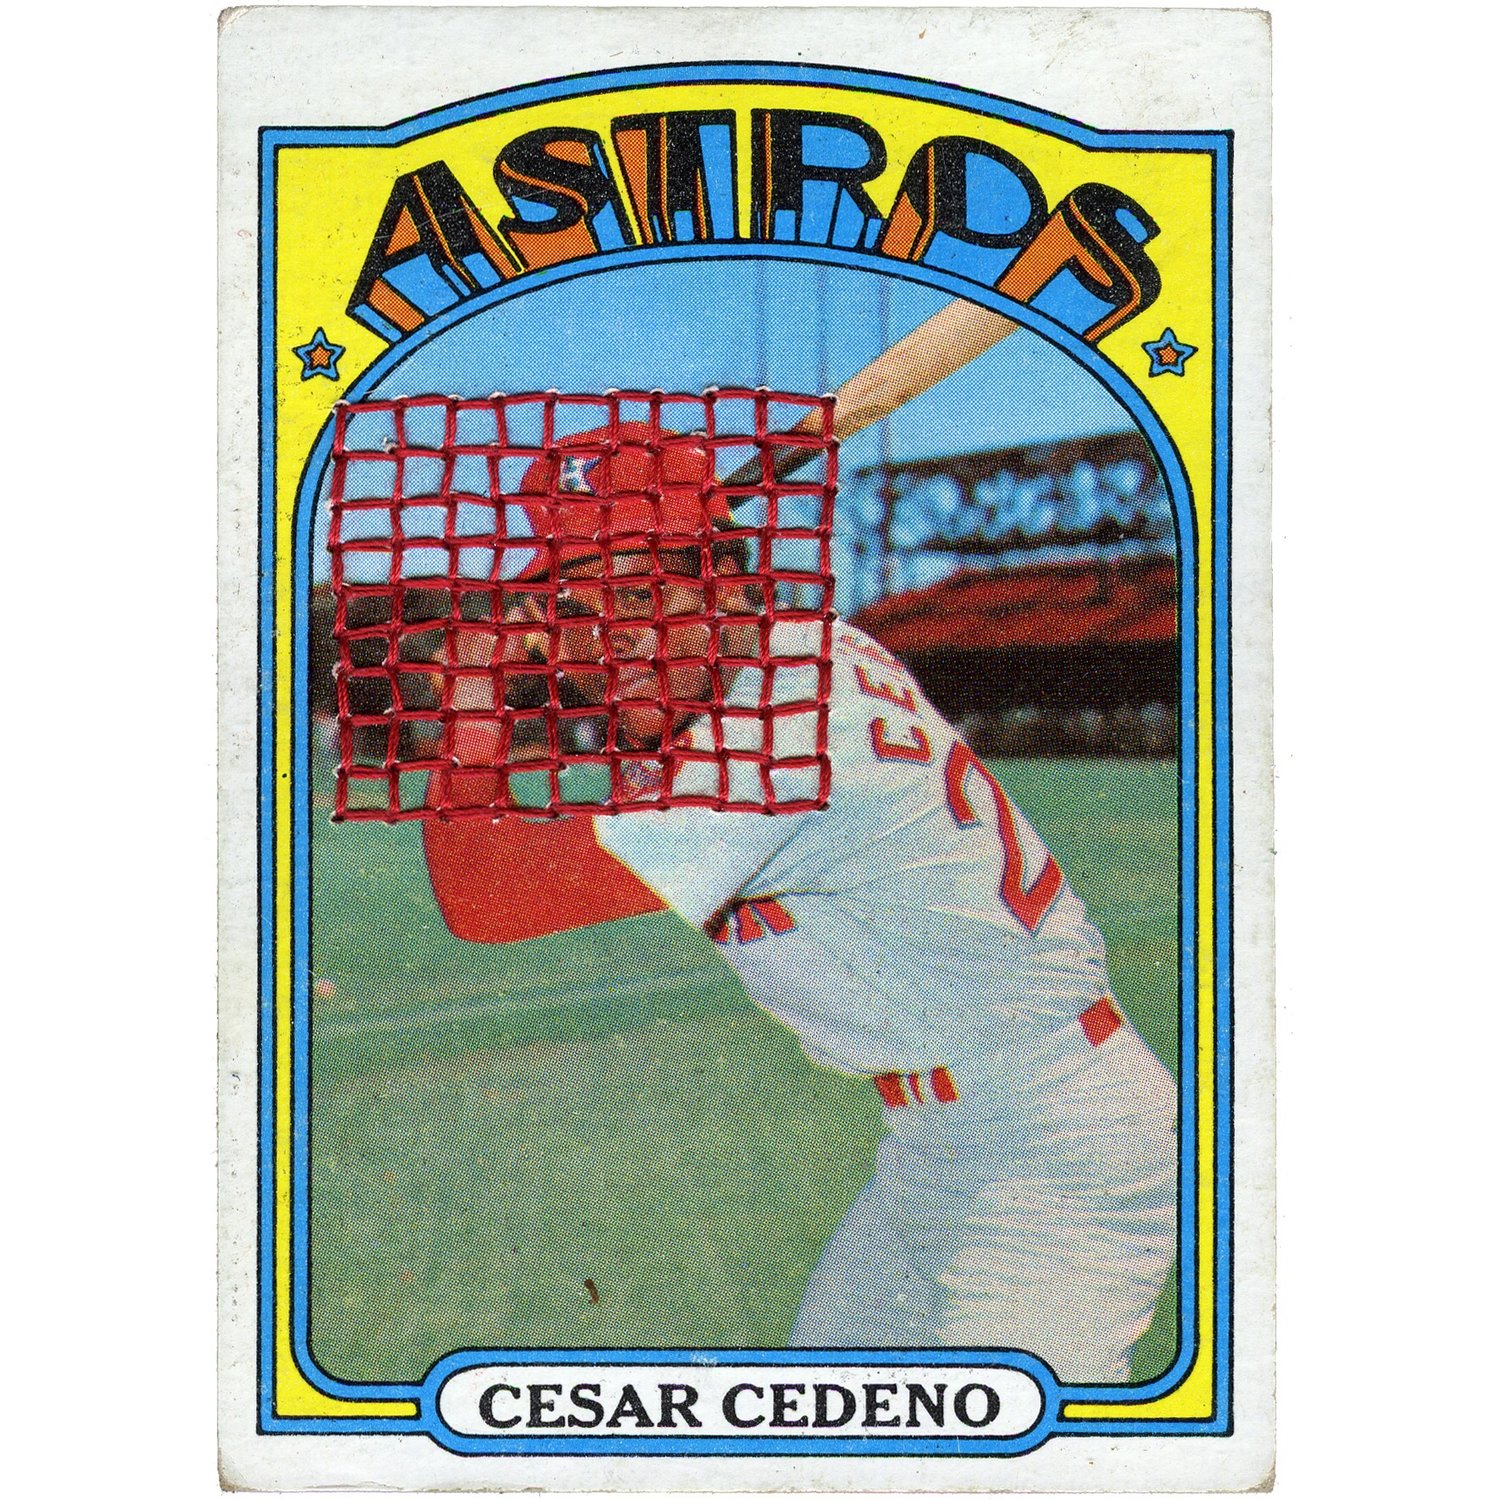 Cesar Cedeno